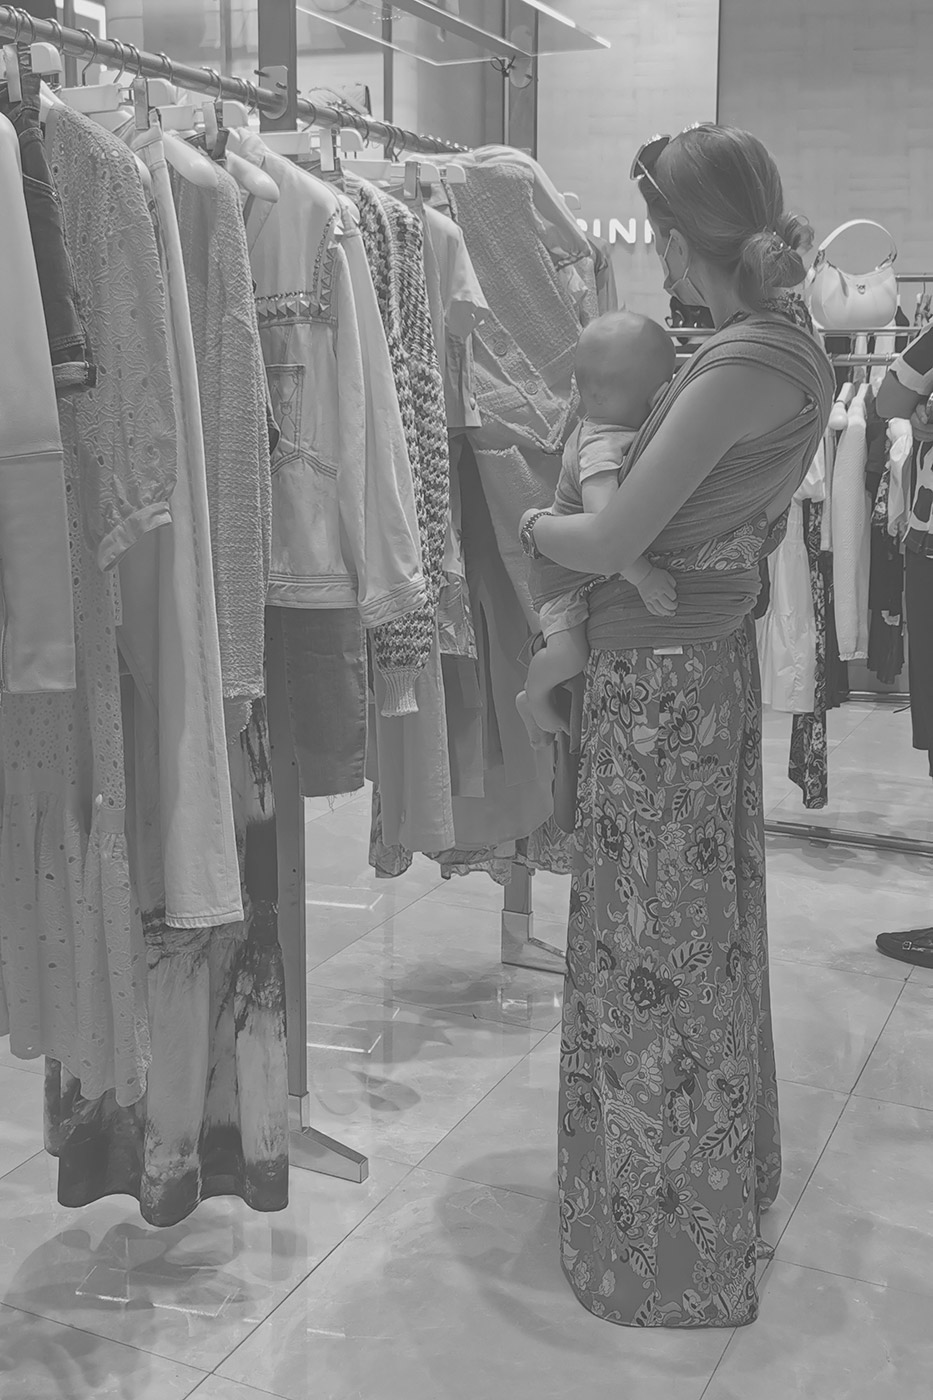 Frau mit Baby am Arm beim Shoppen